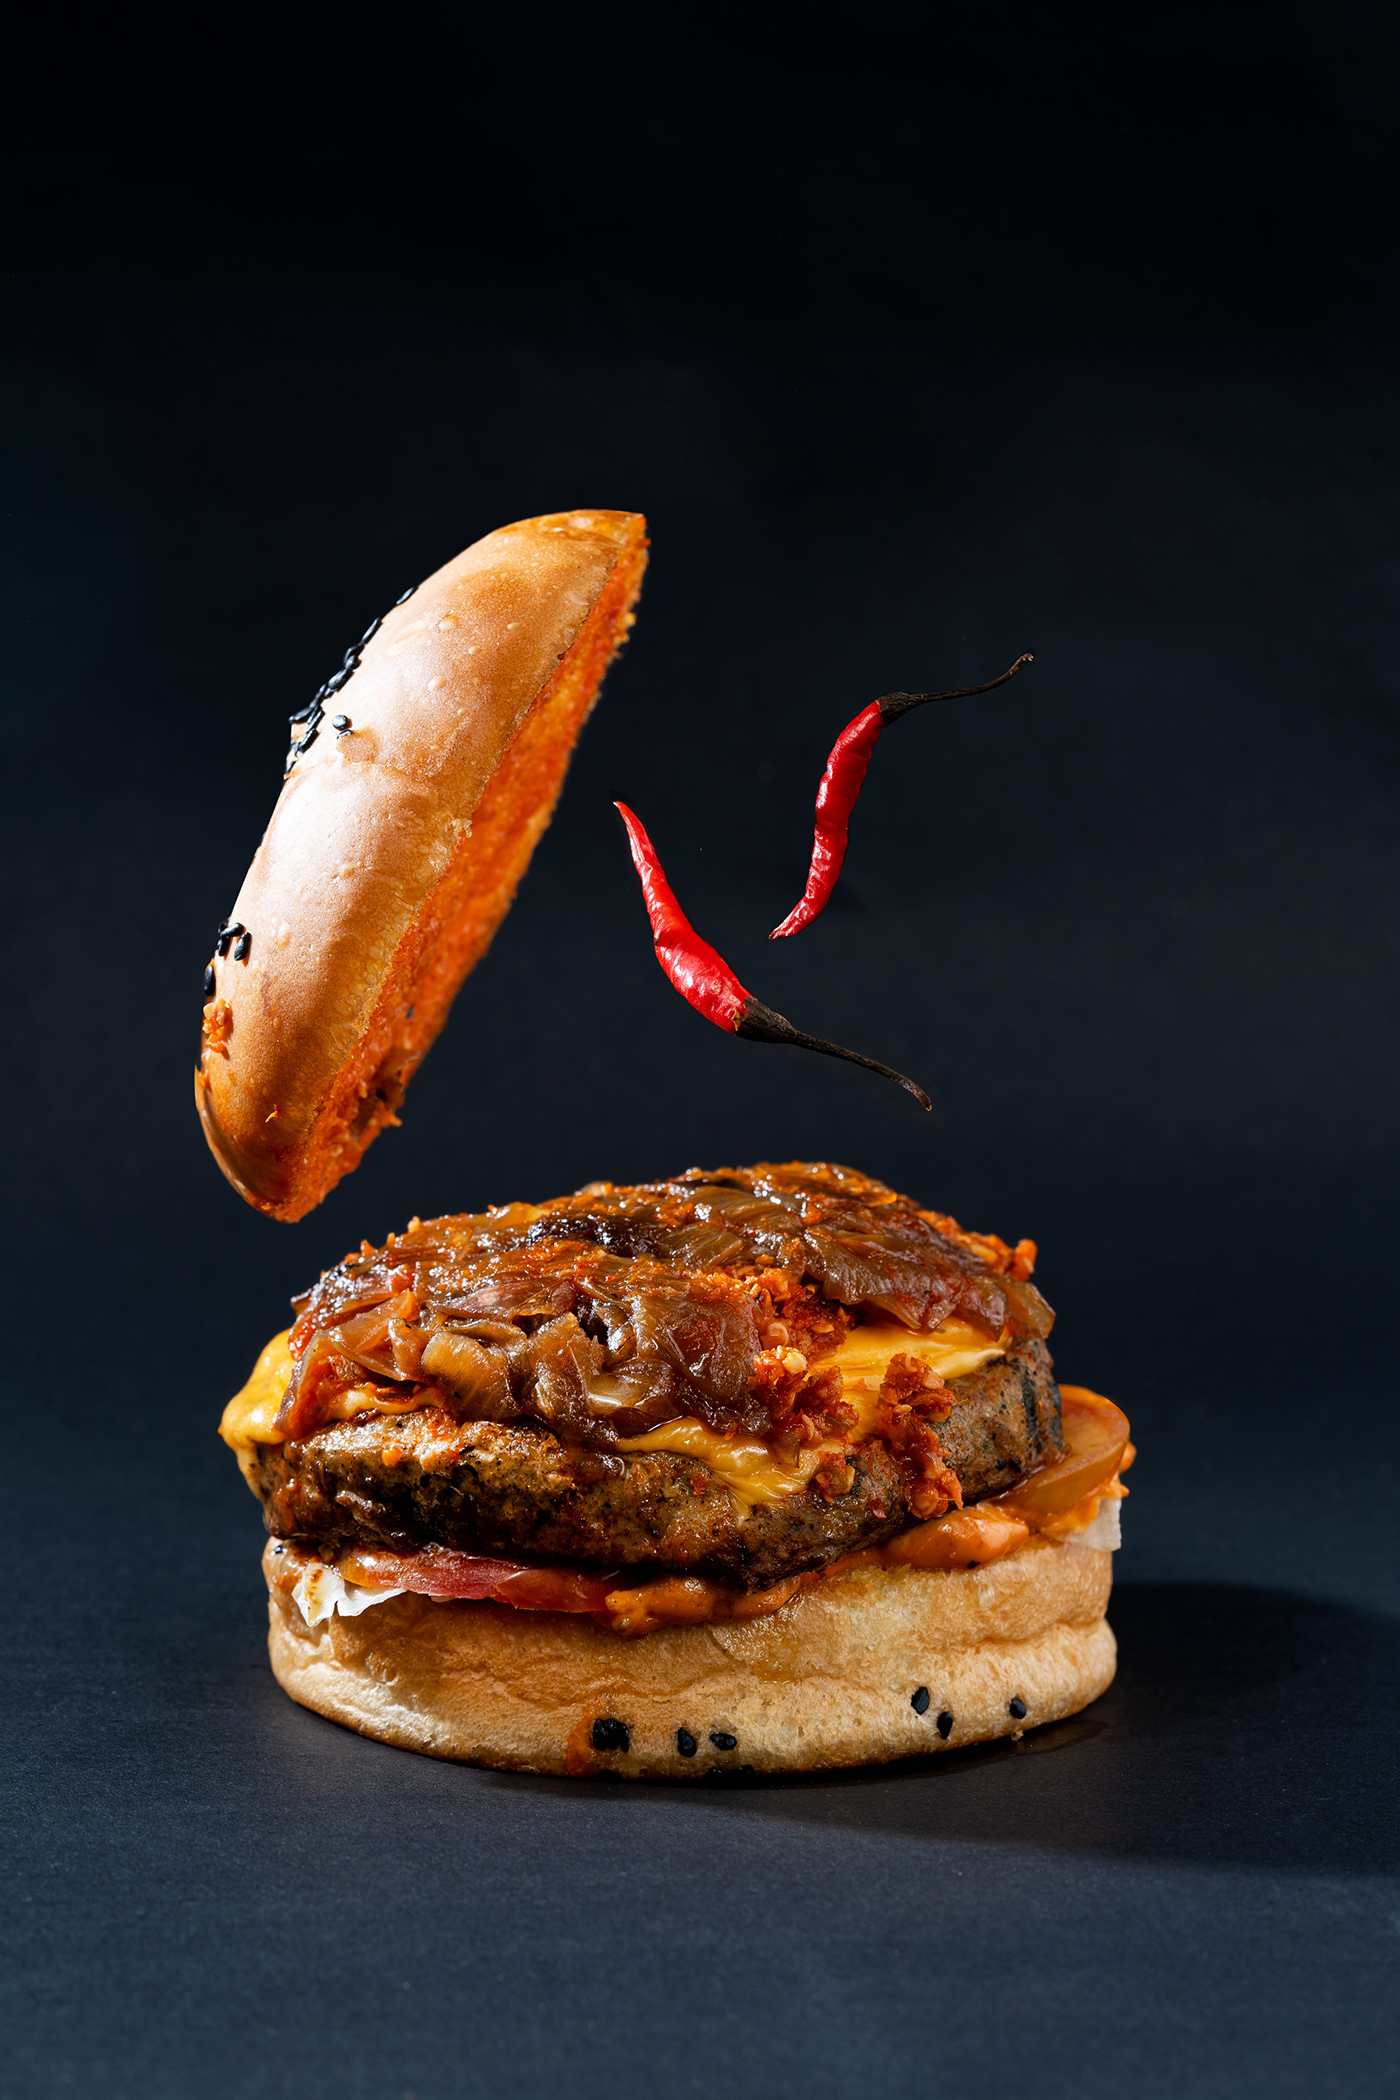 Fast food burger food photography burger photography food styling photoshop photographer mumbai photographer